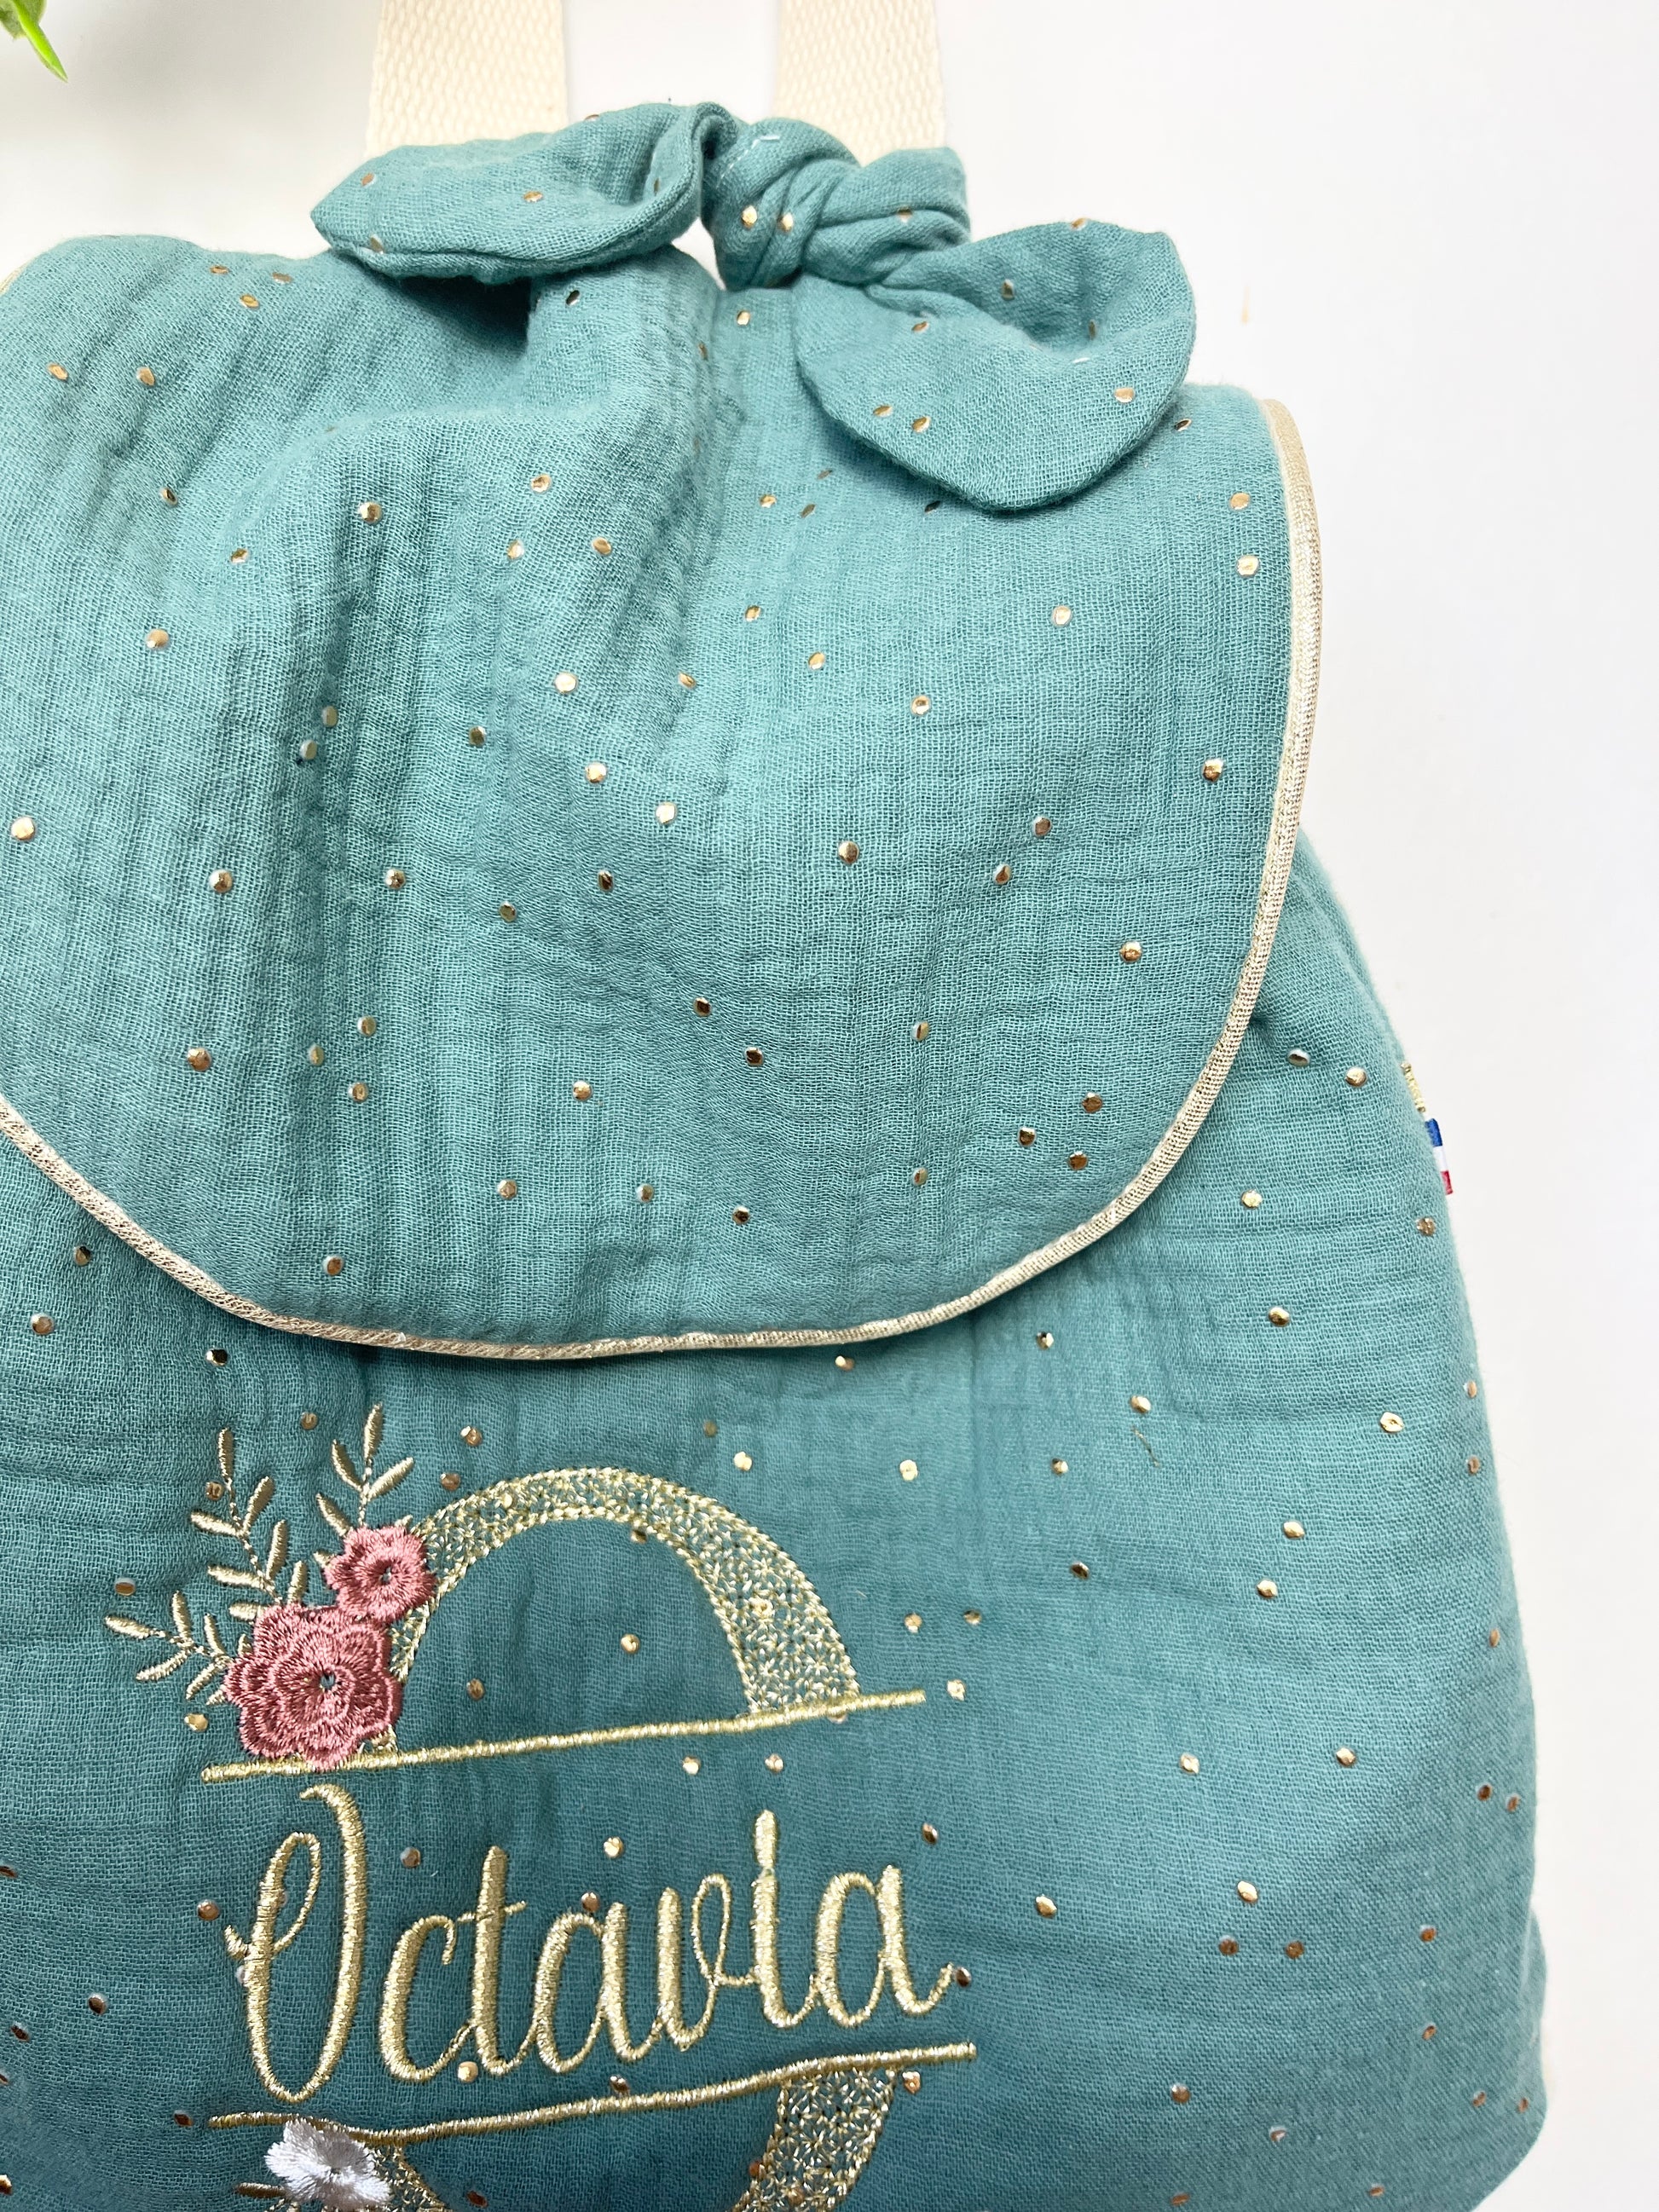 Sac à dos crèche-maternelle personnalisable liberty bleu marine à fleurs  roses